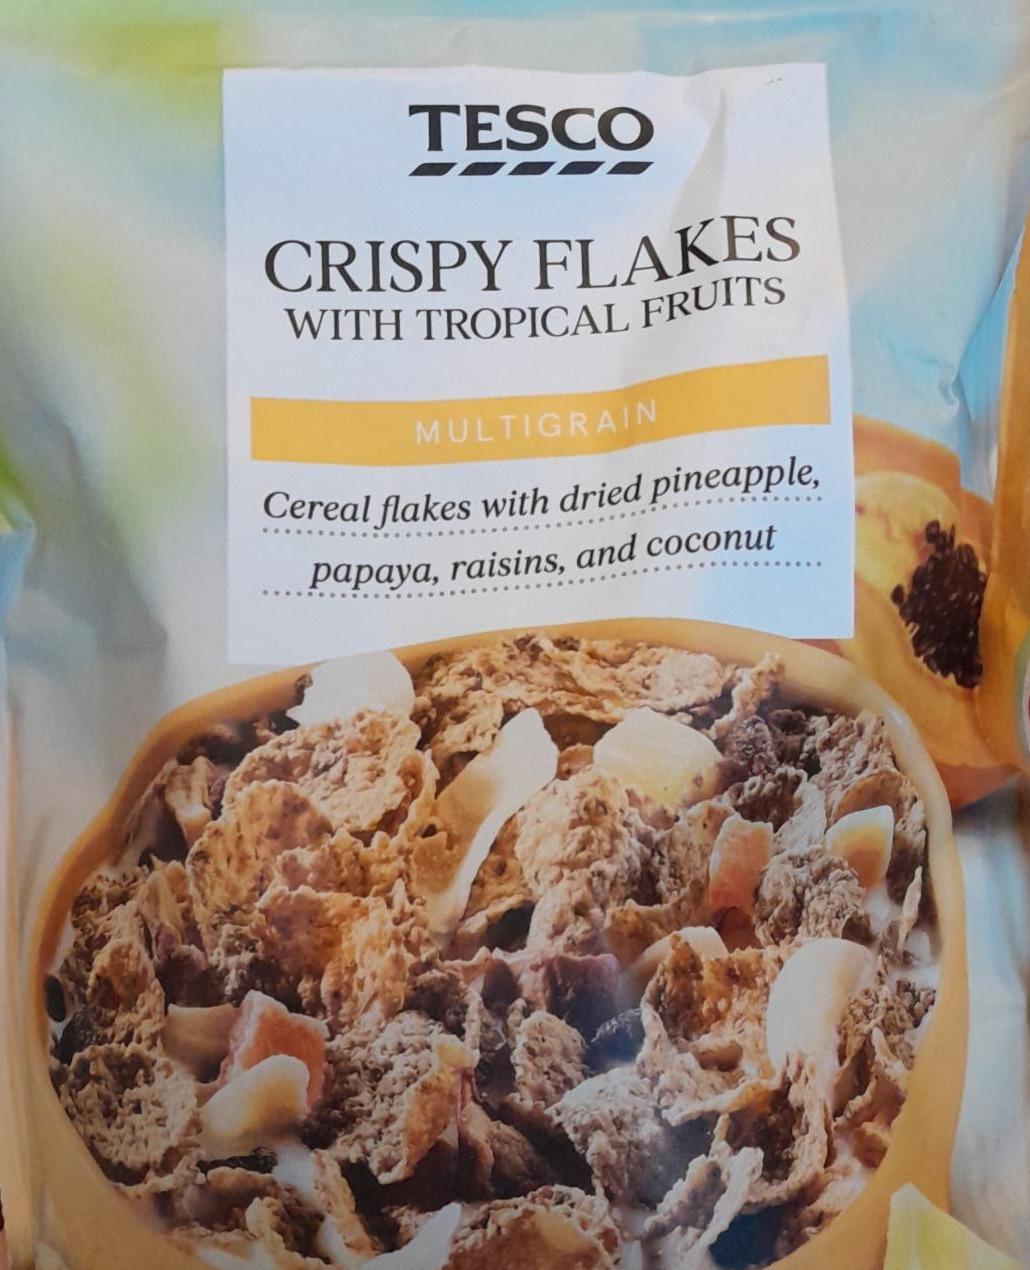 Képek - Crispy flakes with tropical fruits Tesco